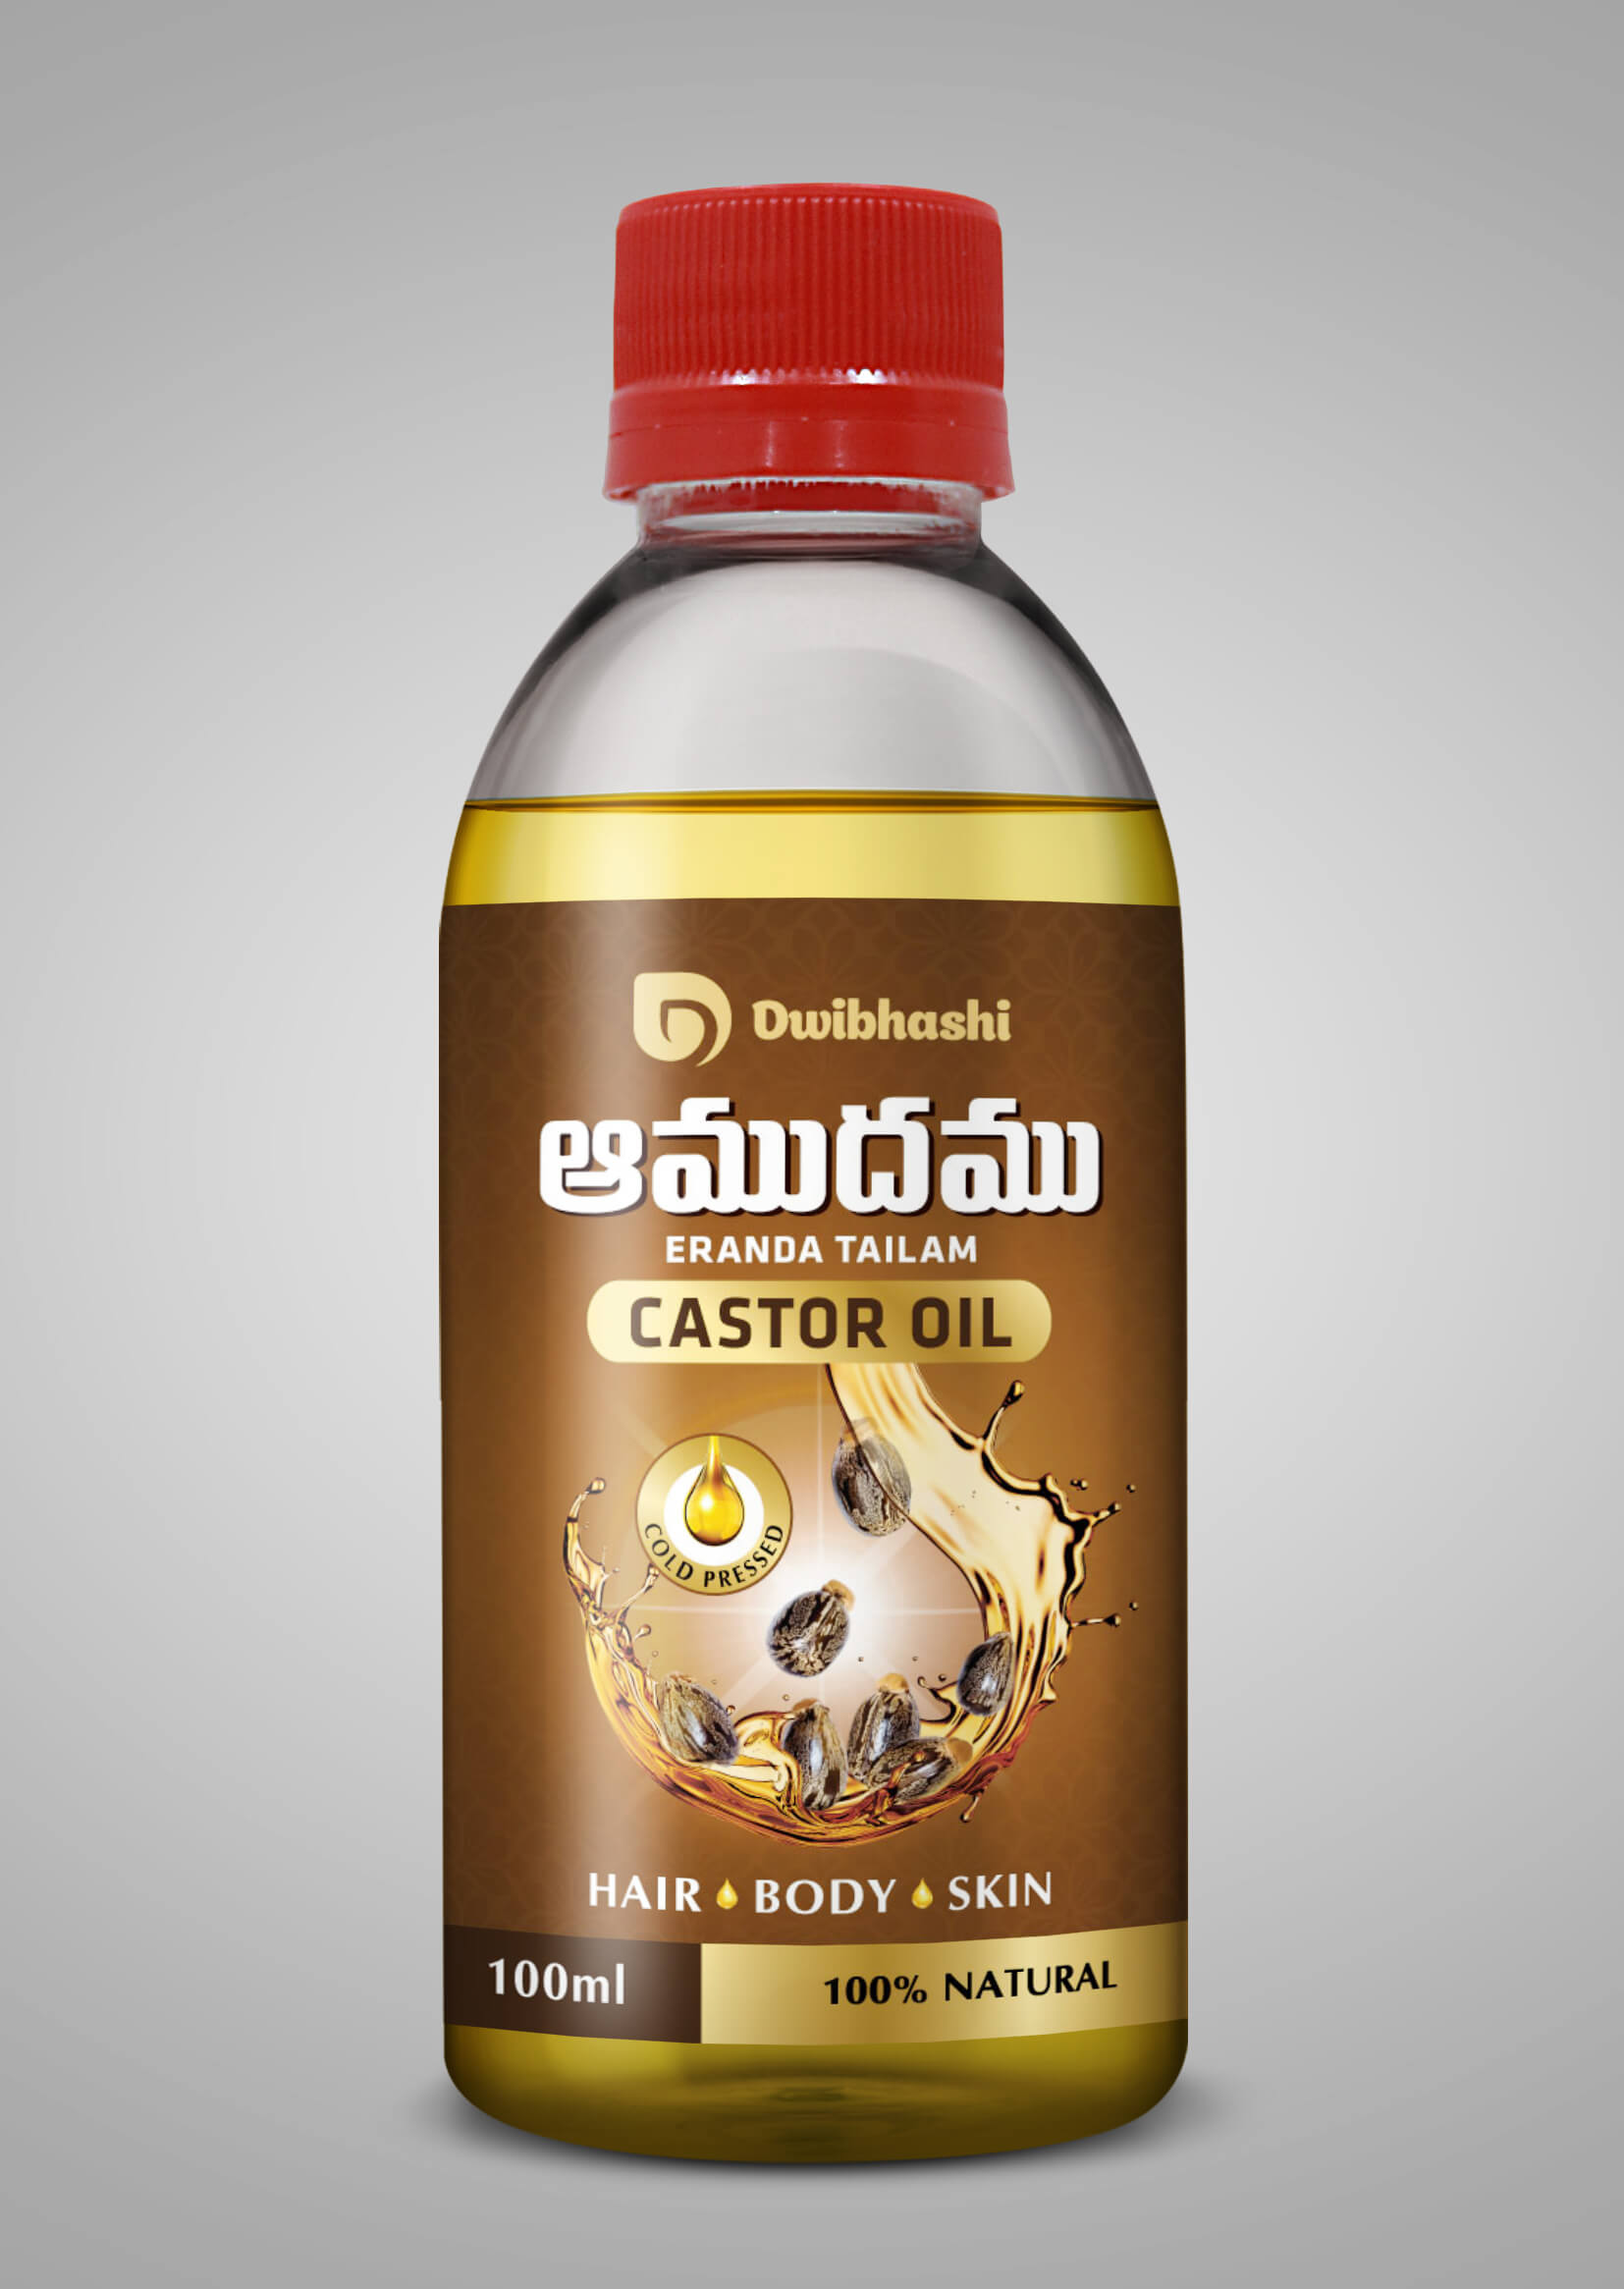 Buy Castor Oil Online